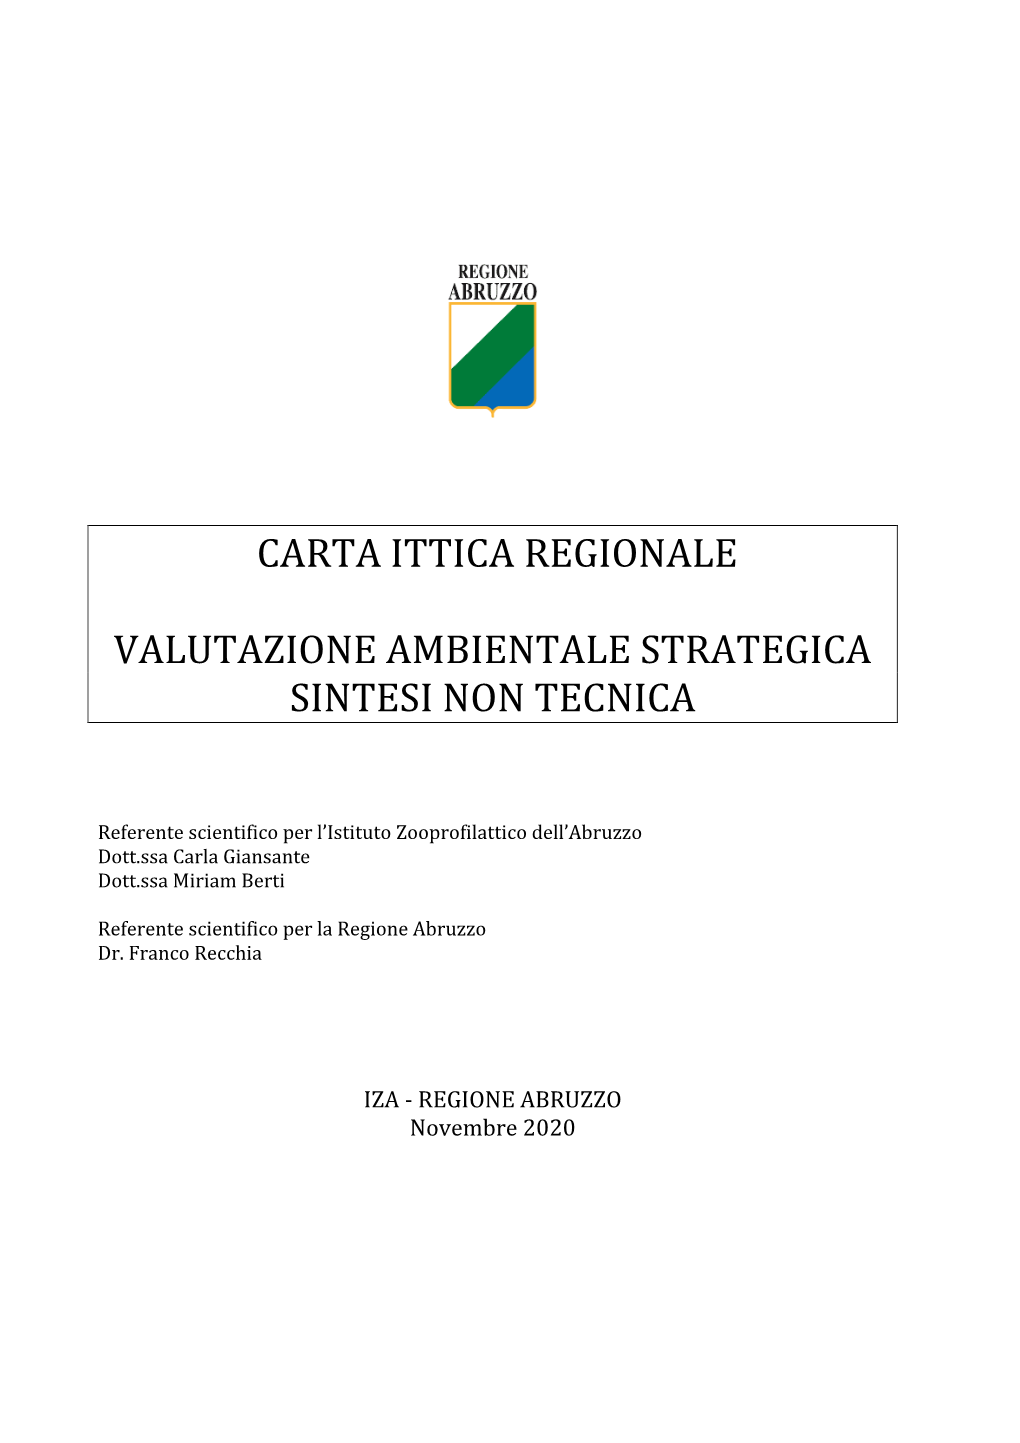 Carta Ittica Regionale Valutazione Ambientale Strategica Sintesi Non Tecnica